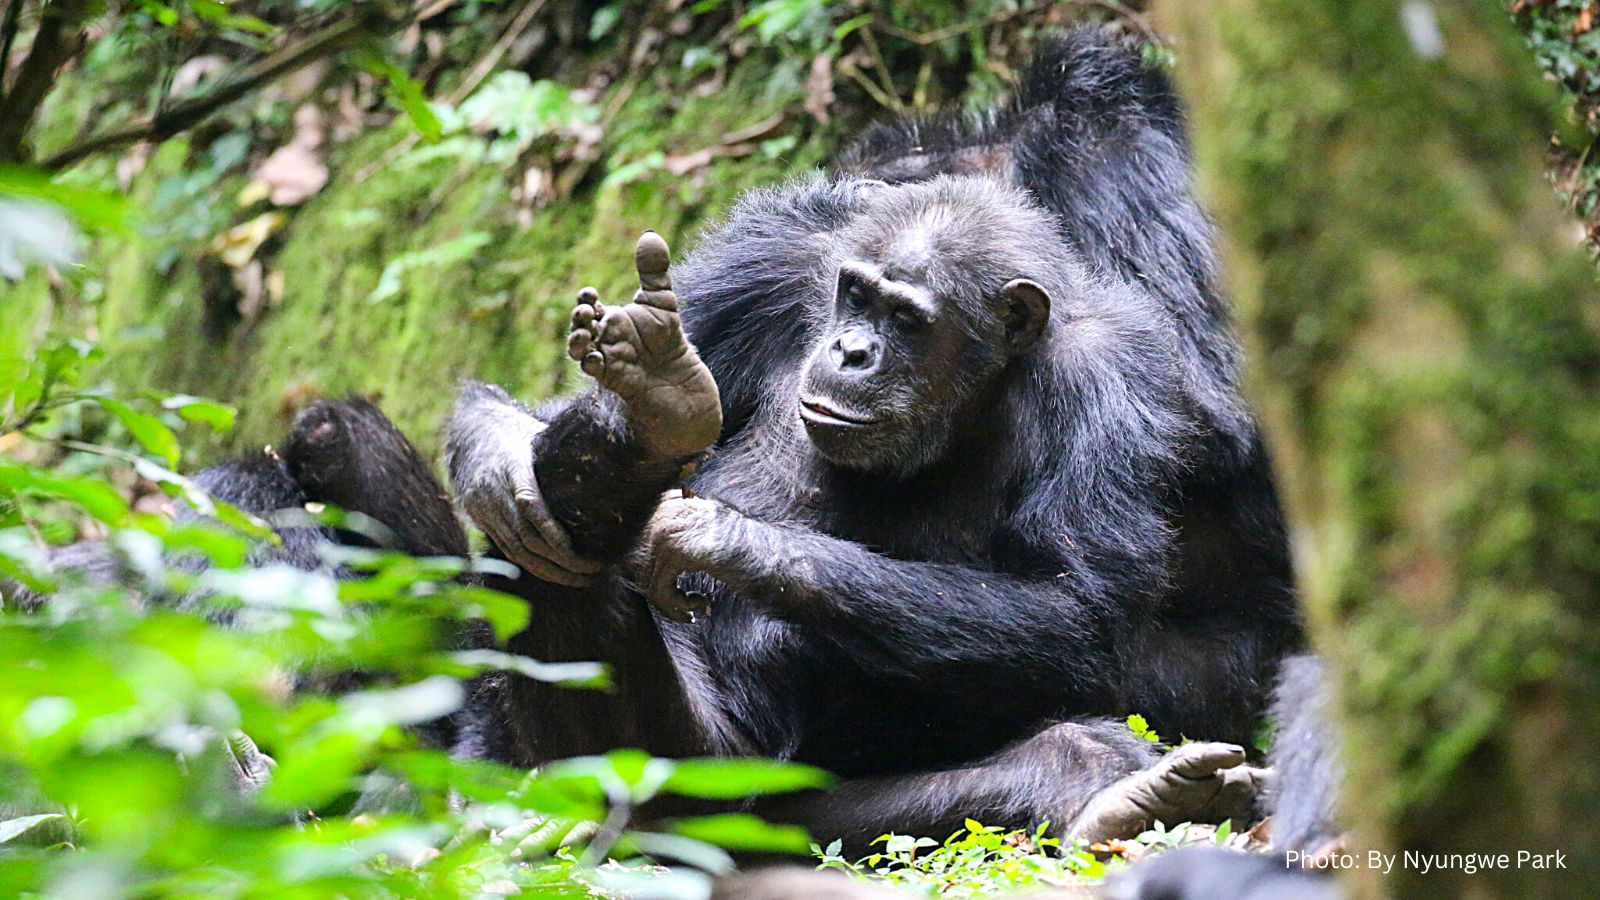 New Chimpanzee Trekking Fees In Nyungwe By 2023